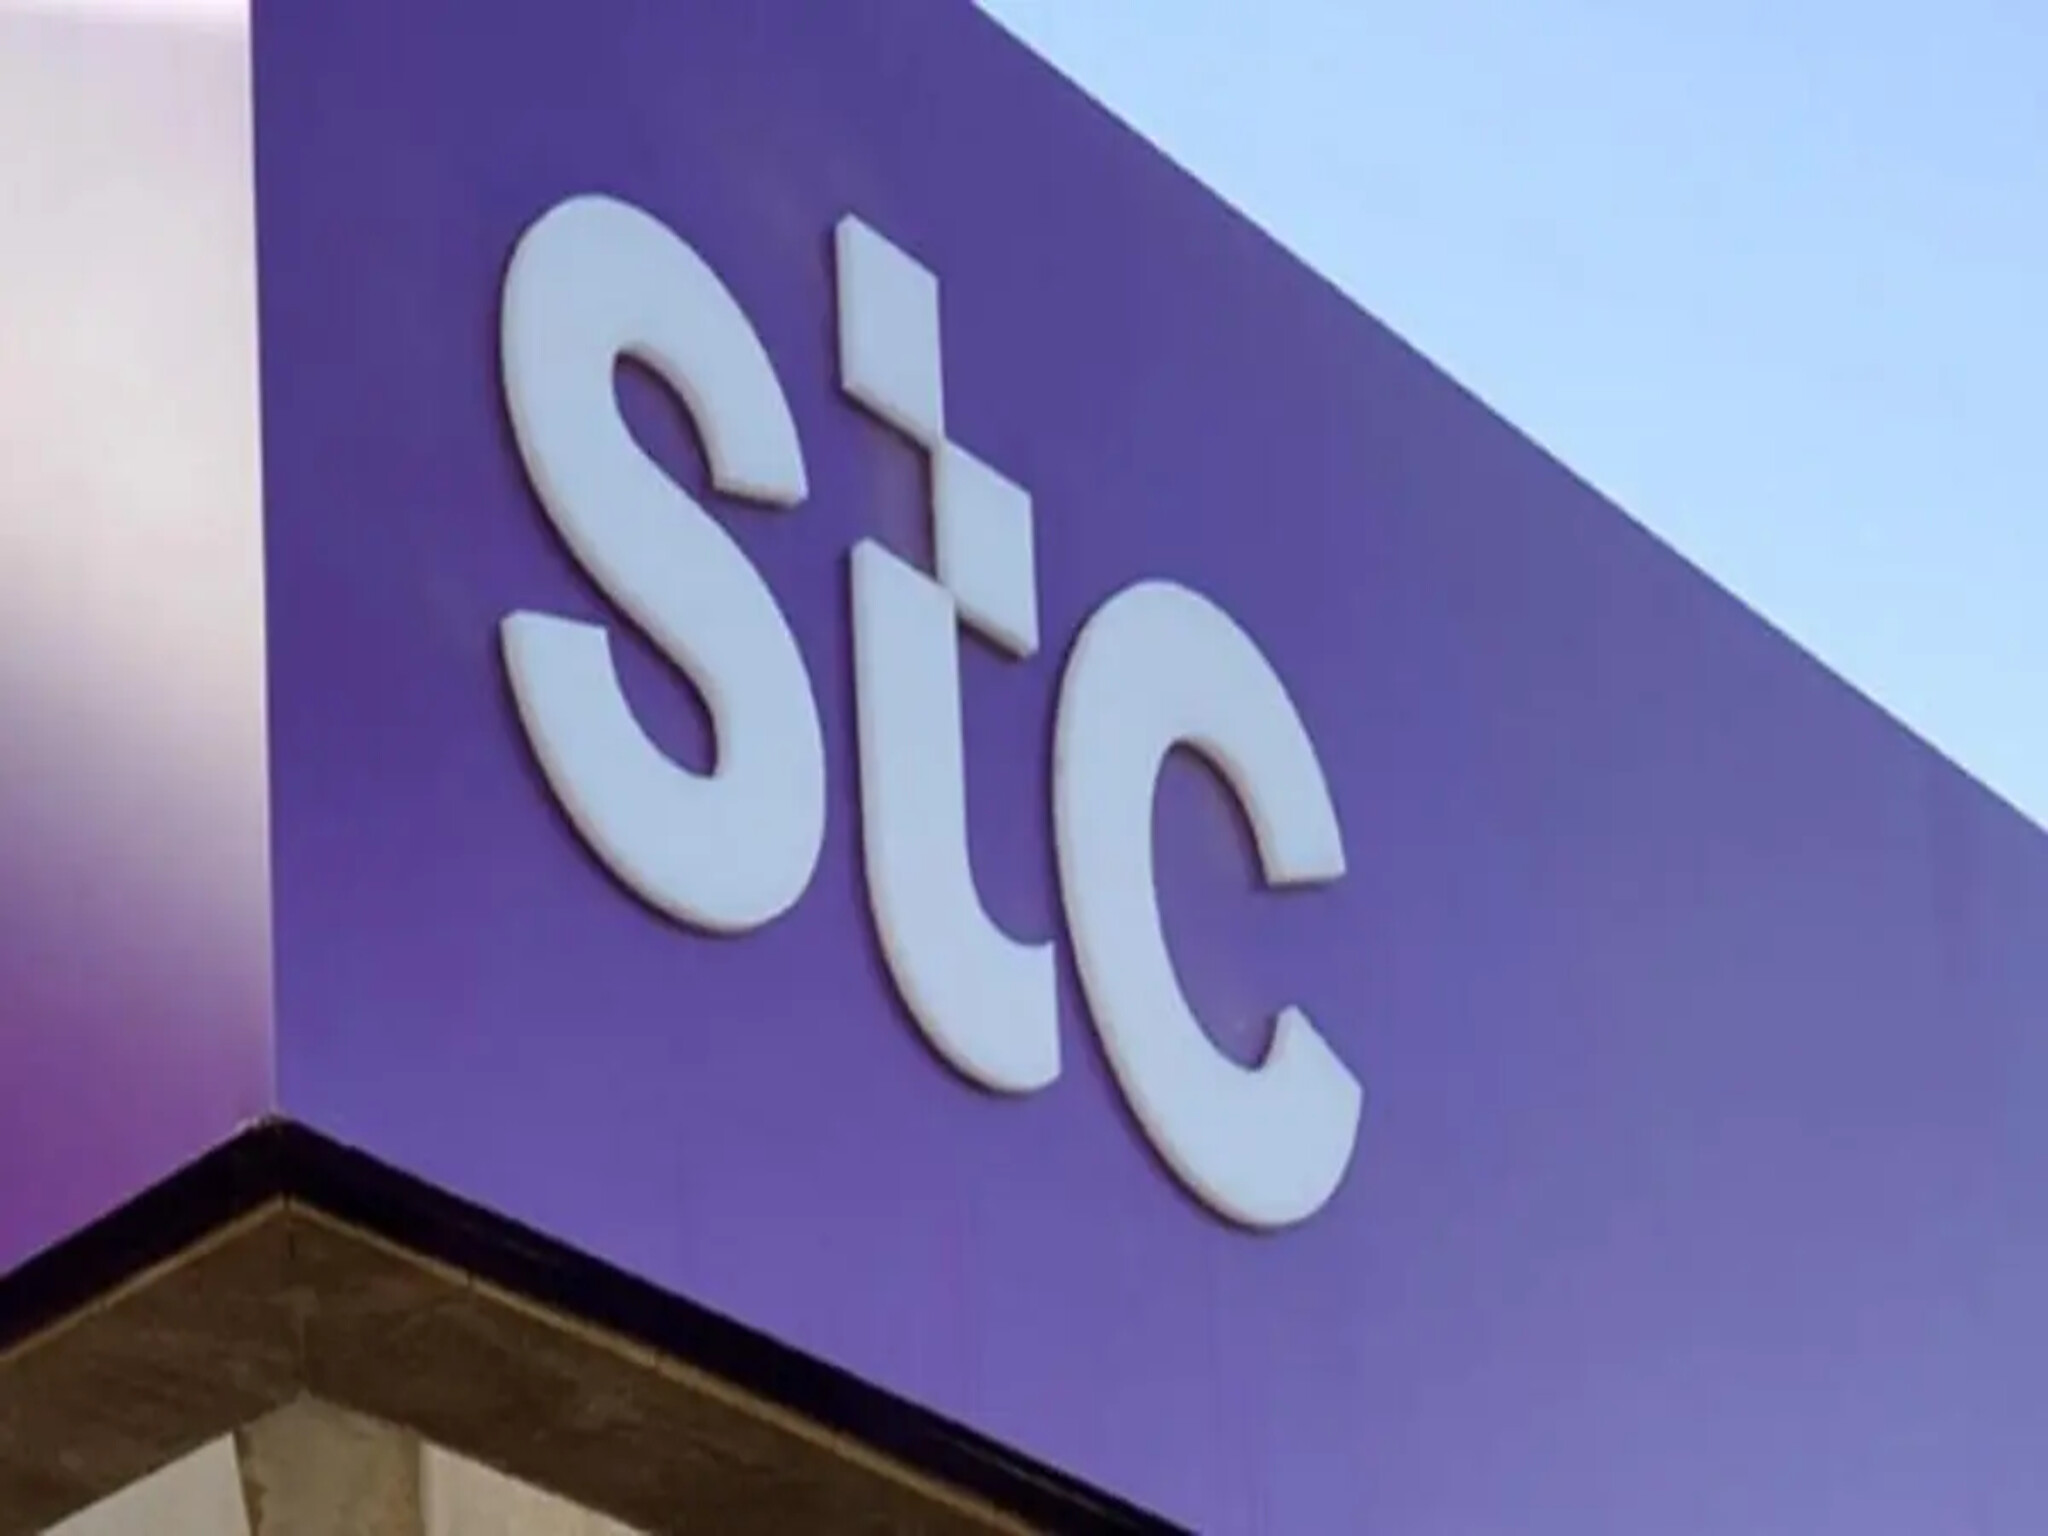 شركة الاتصالات السعودية "STC" تفتح باب التوظيف برواتب مجزية وتأمين طبي شامل